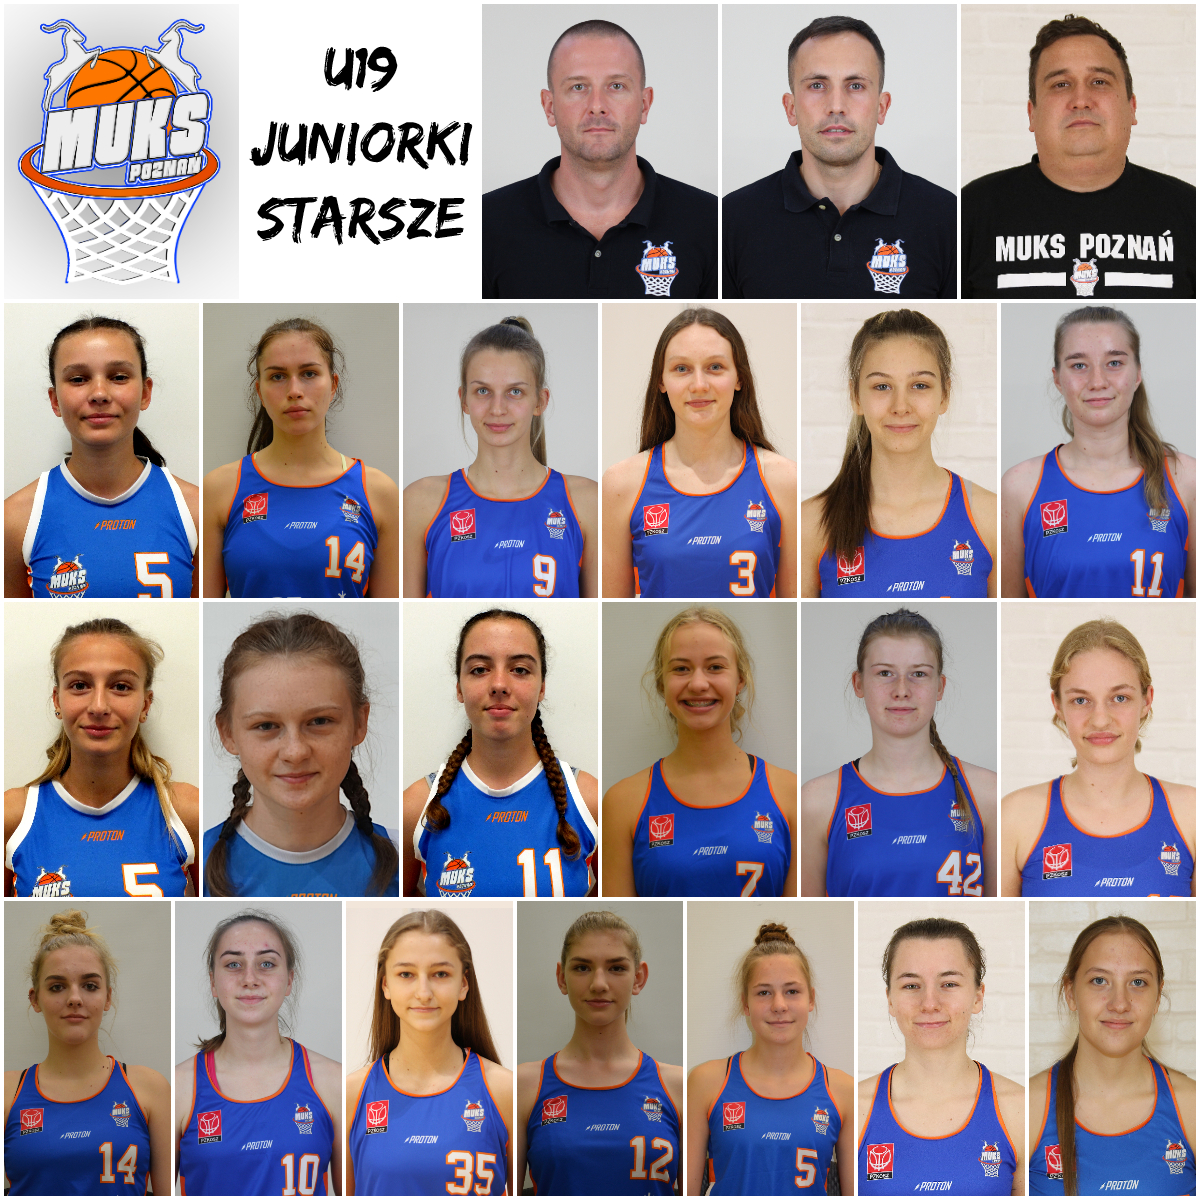 U19: Juniorki Starsze Mistrzem Wielkopolski